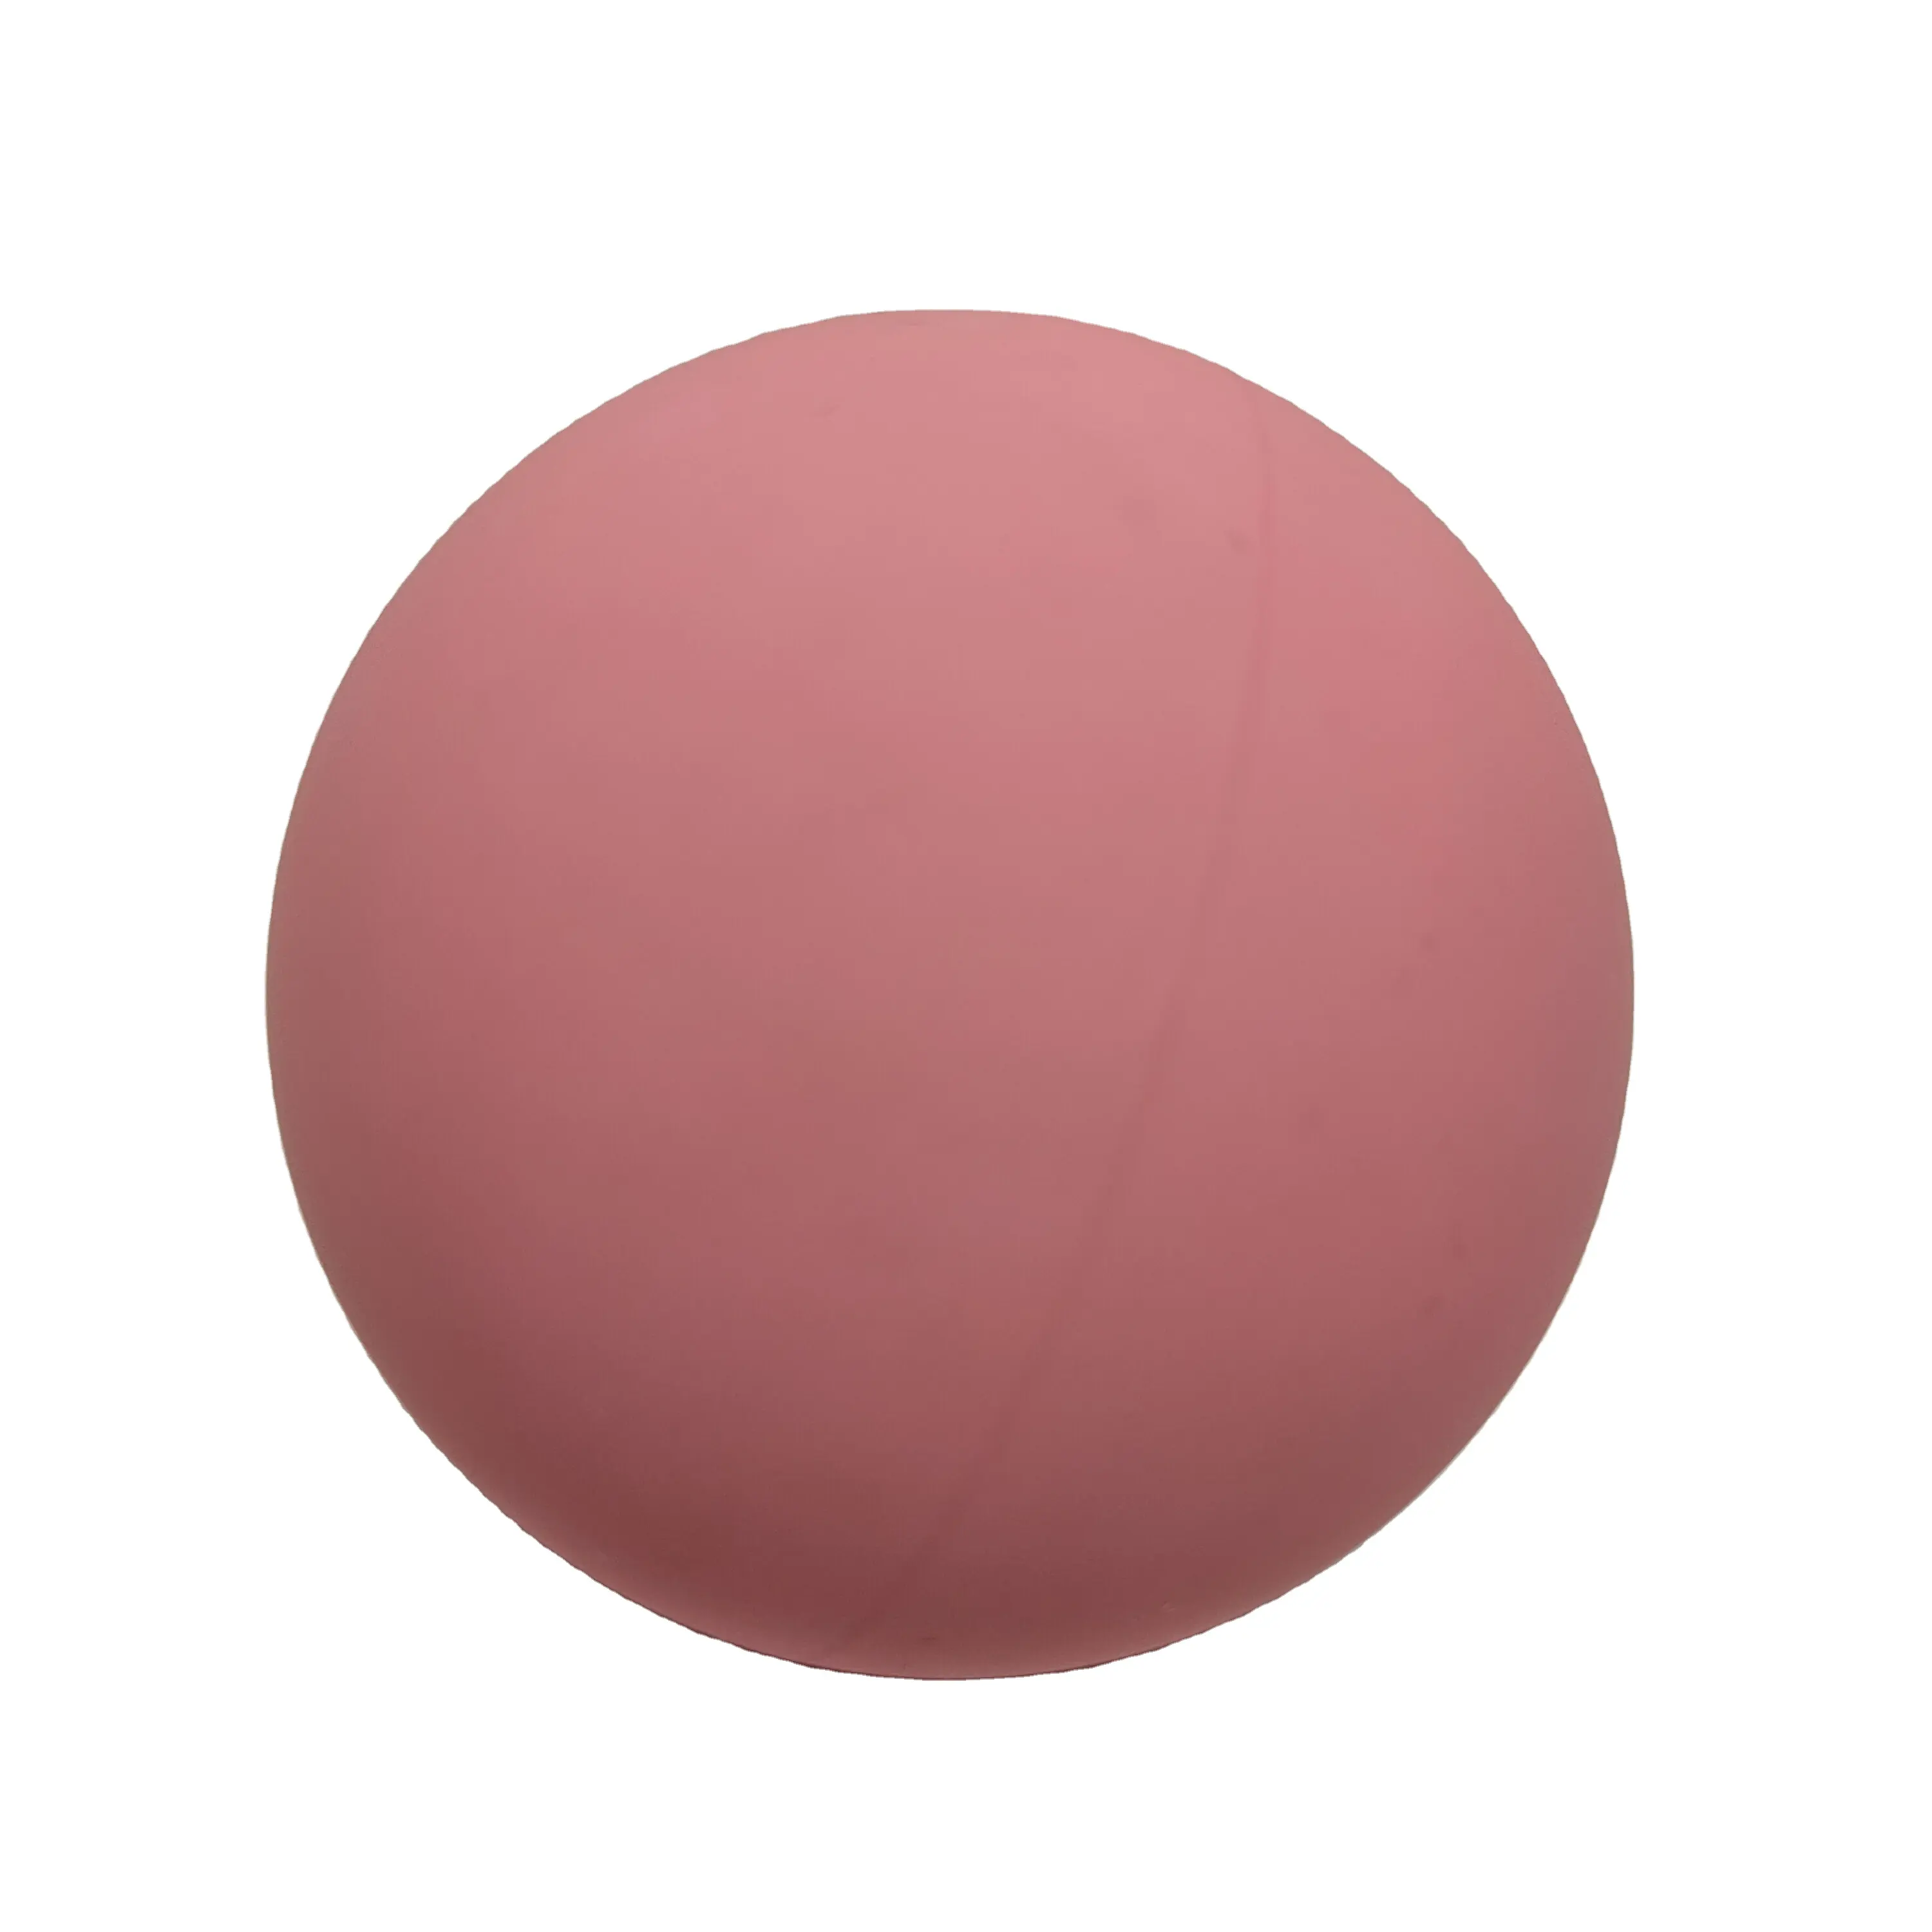 Bolas de Squash en diferentes colores, pelota de Squash hinchable de rebote alto, Bola de mano en la escuela, color rosa brillante chino, envío gratis